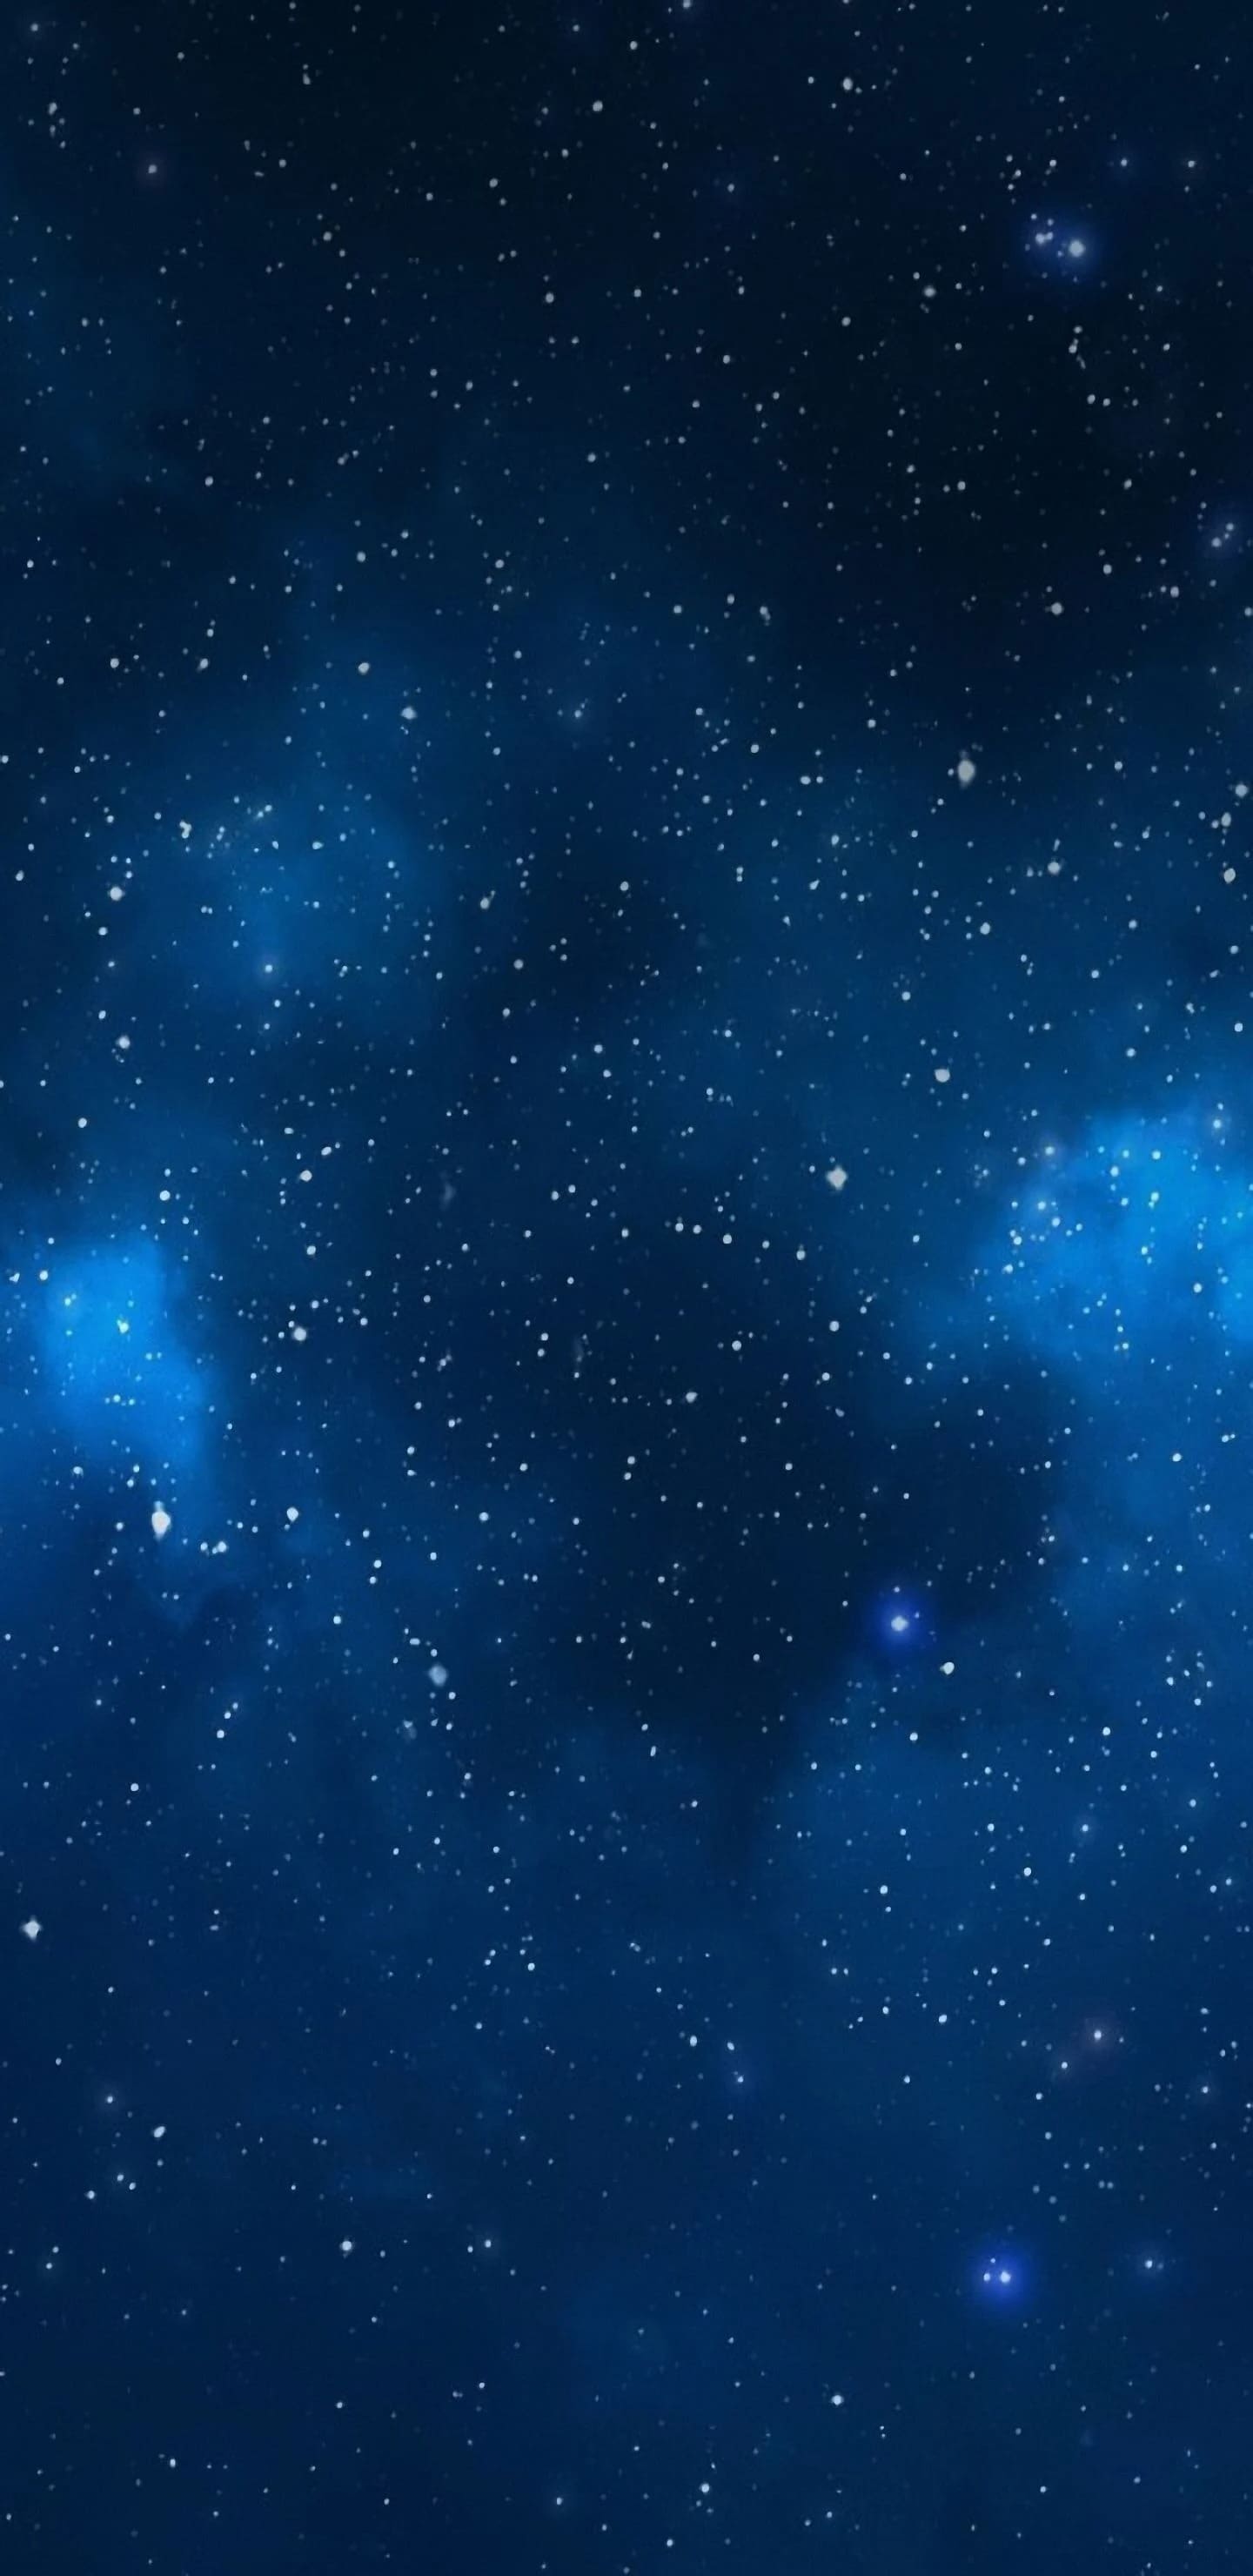 Bộ hình nền Bầu trời đêm huyền ảo cho desktop - GVN360